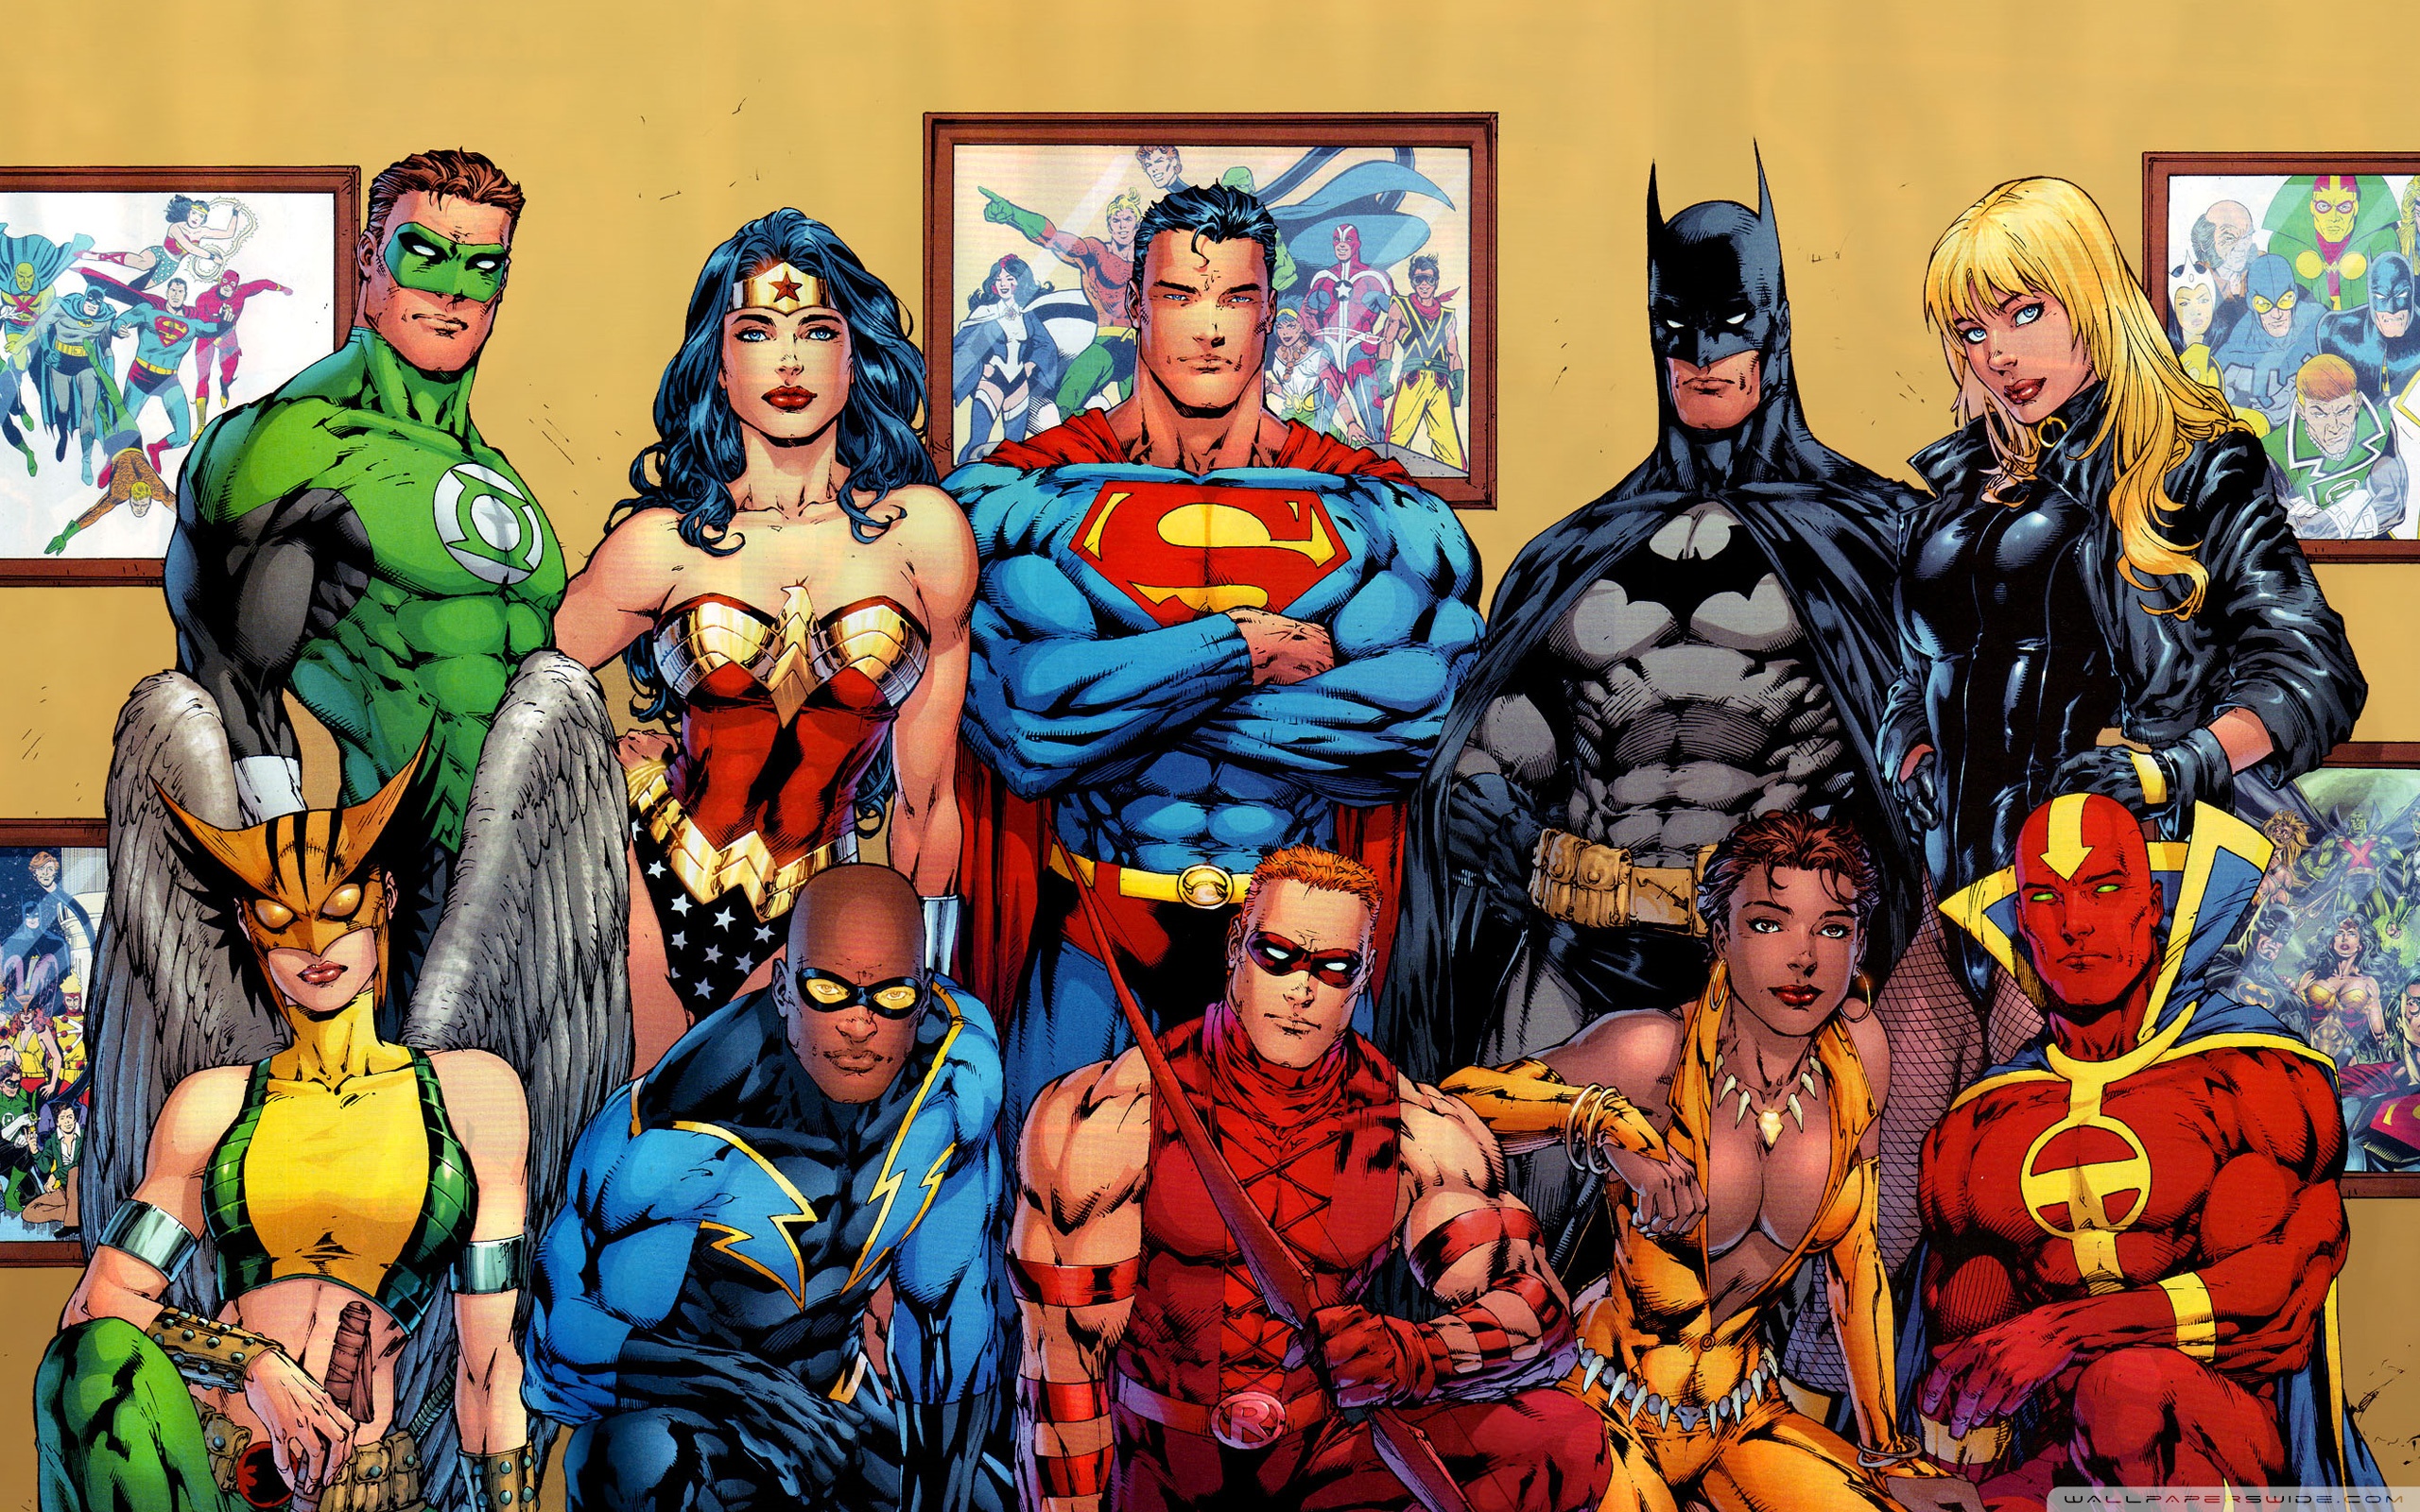 fond d'écran de super héros hd,des bandes dessinées,super héros,personnage fictif,héros,fiction